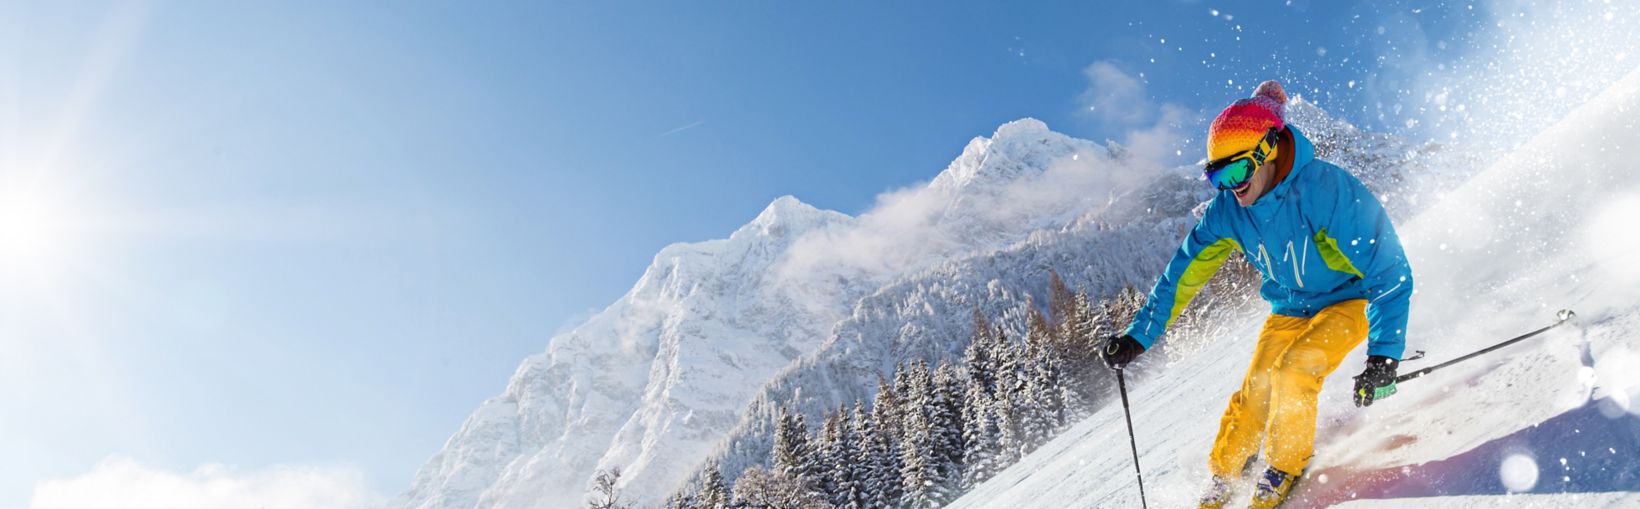 Skieur skiant en descente pendant une journée ensoleillée en haute montagne